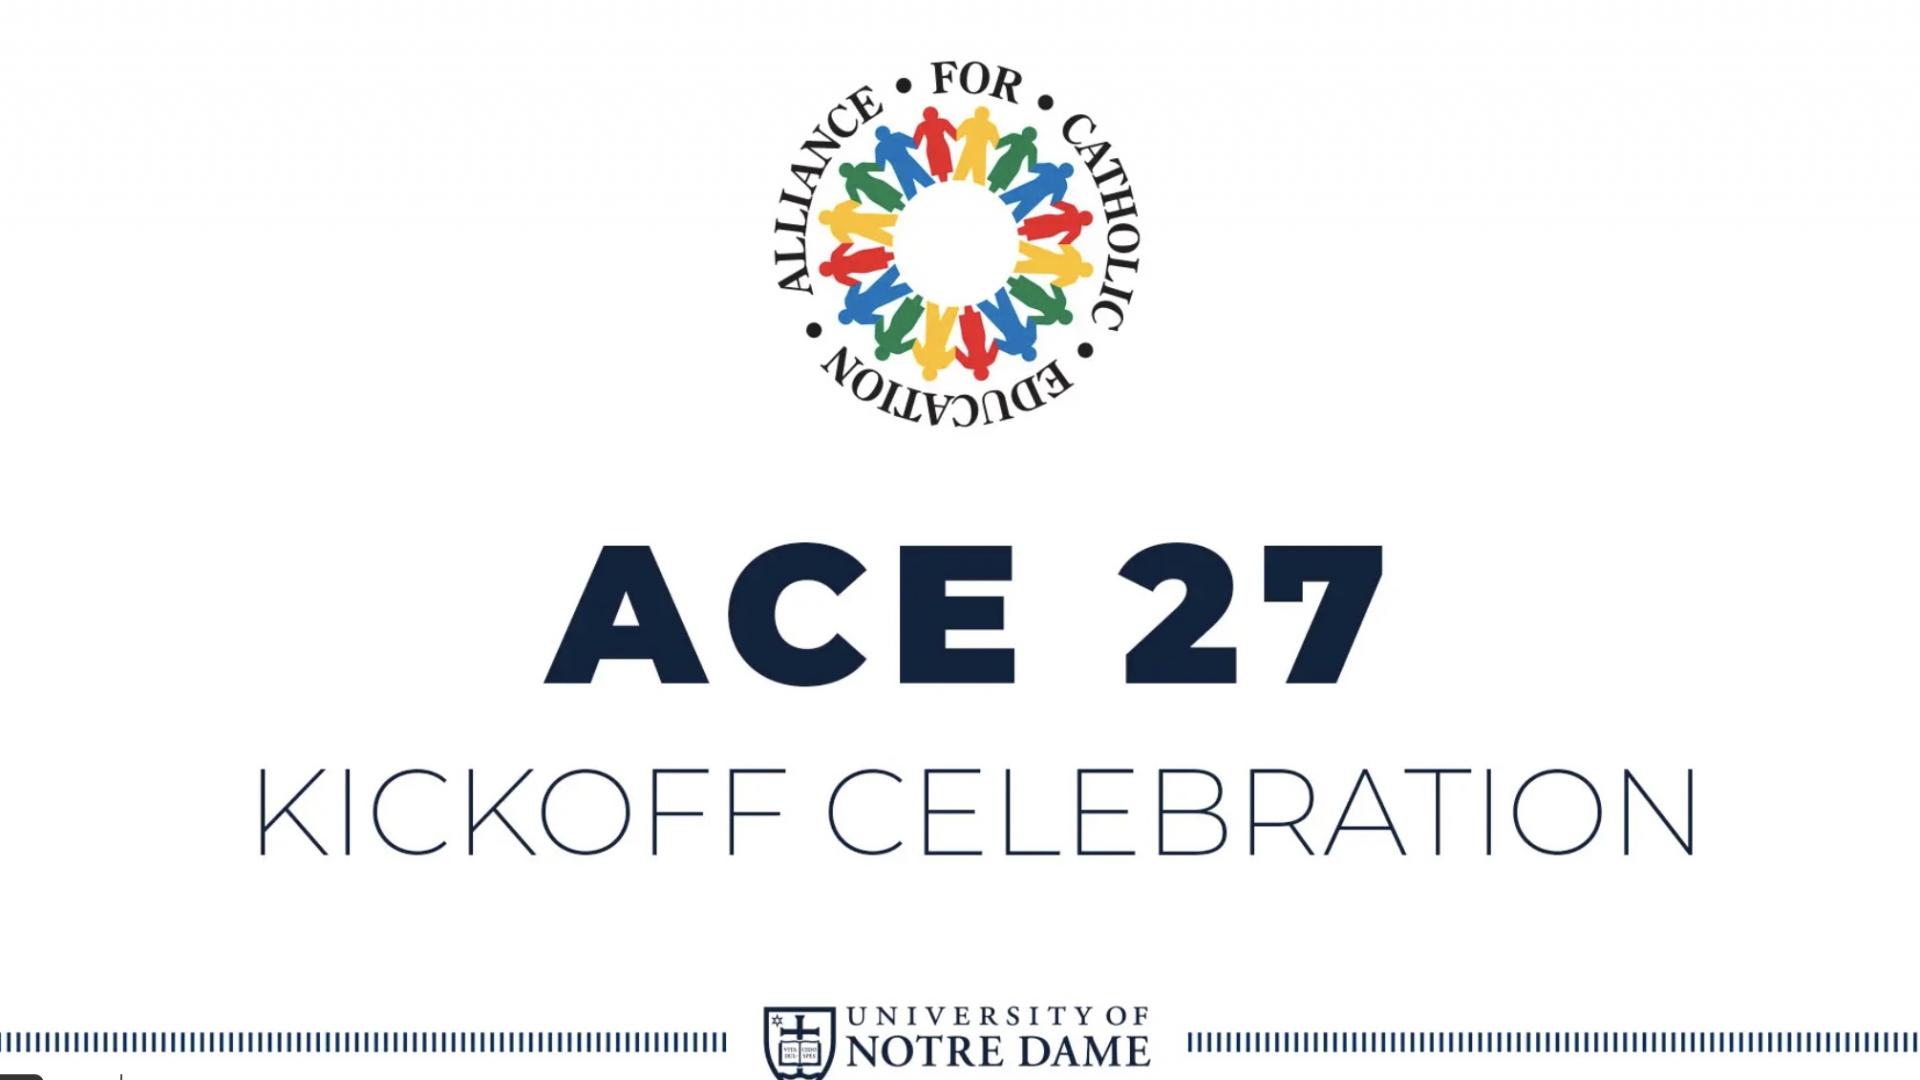 ACE 27 Kickoff Celebration logo